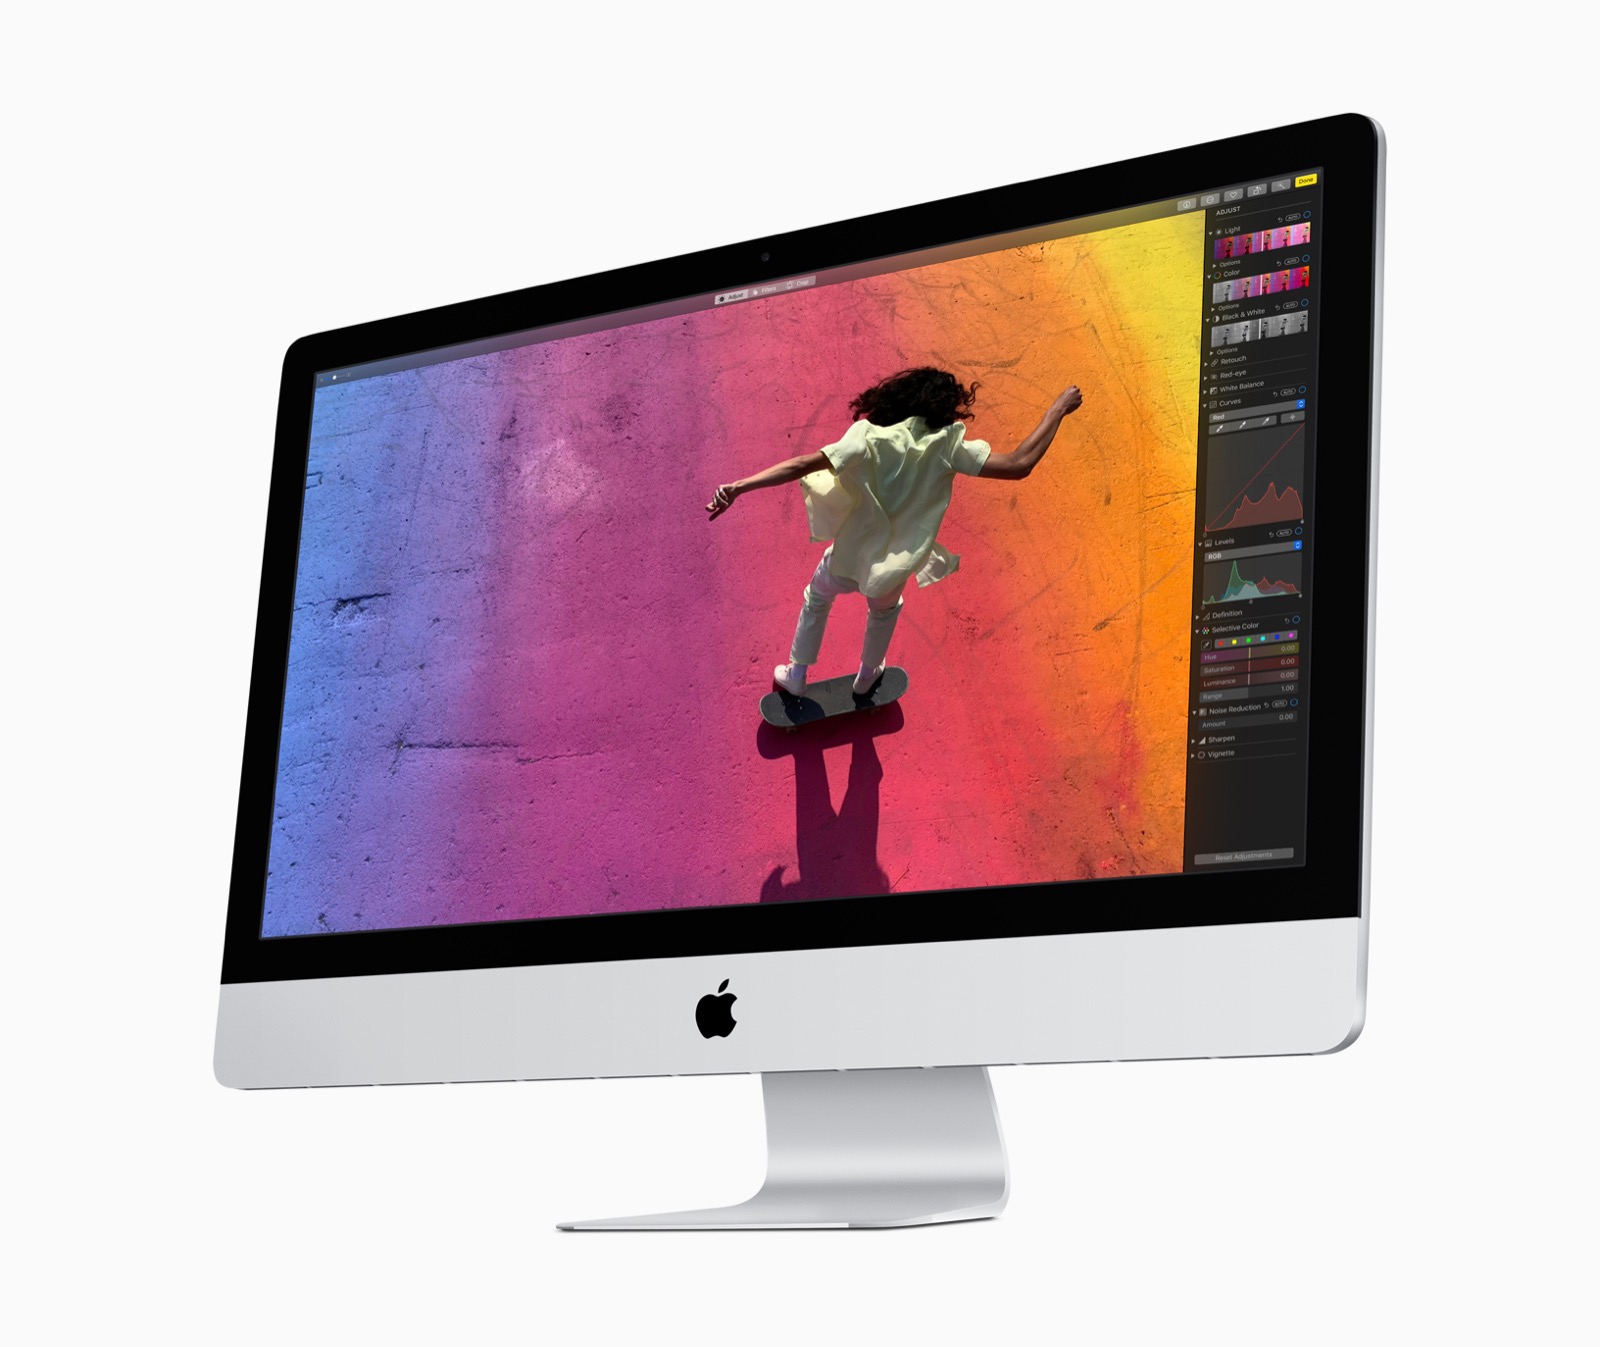 Recensione iMac 27 2019, uno sguardo fiero ai fratelli Pro